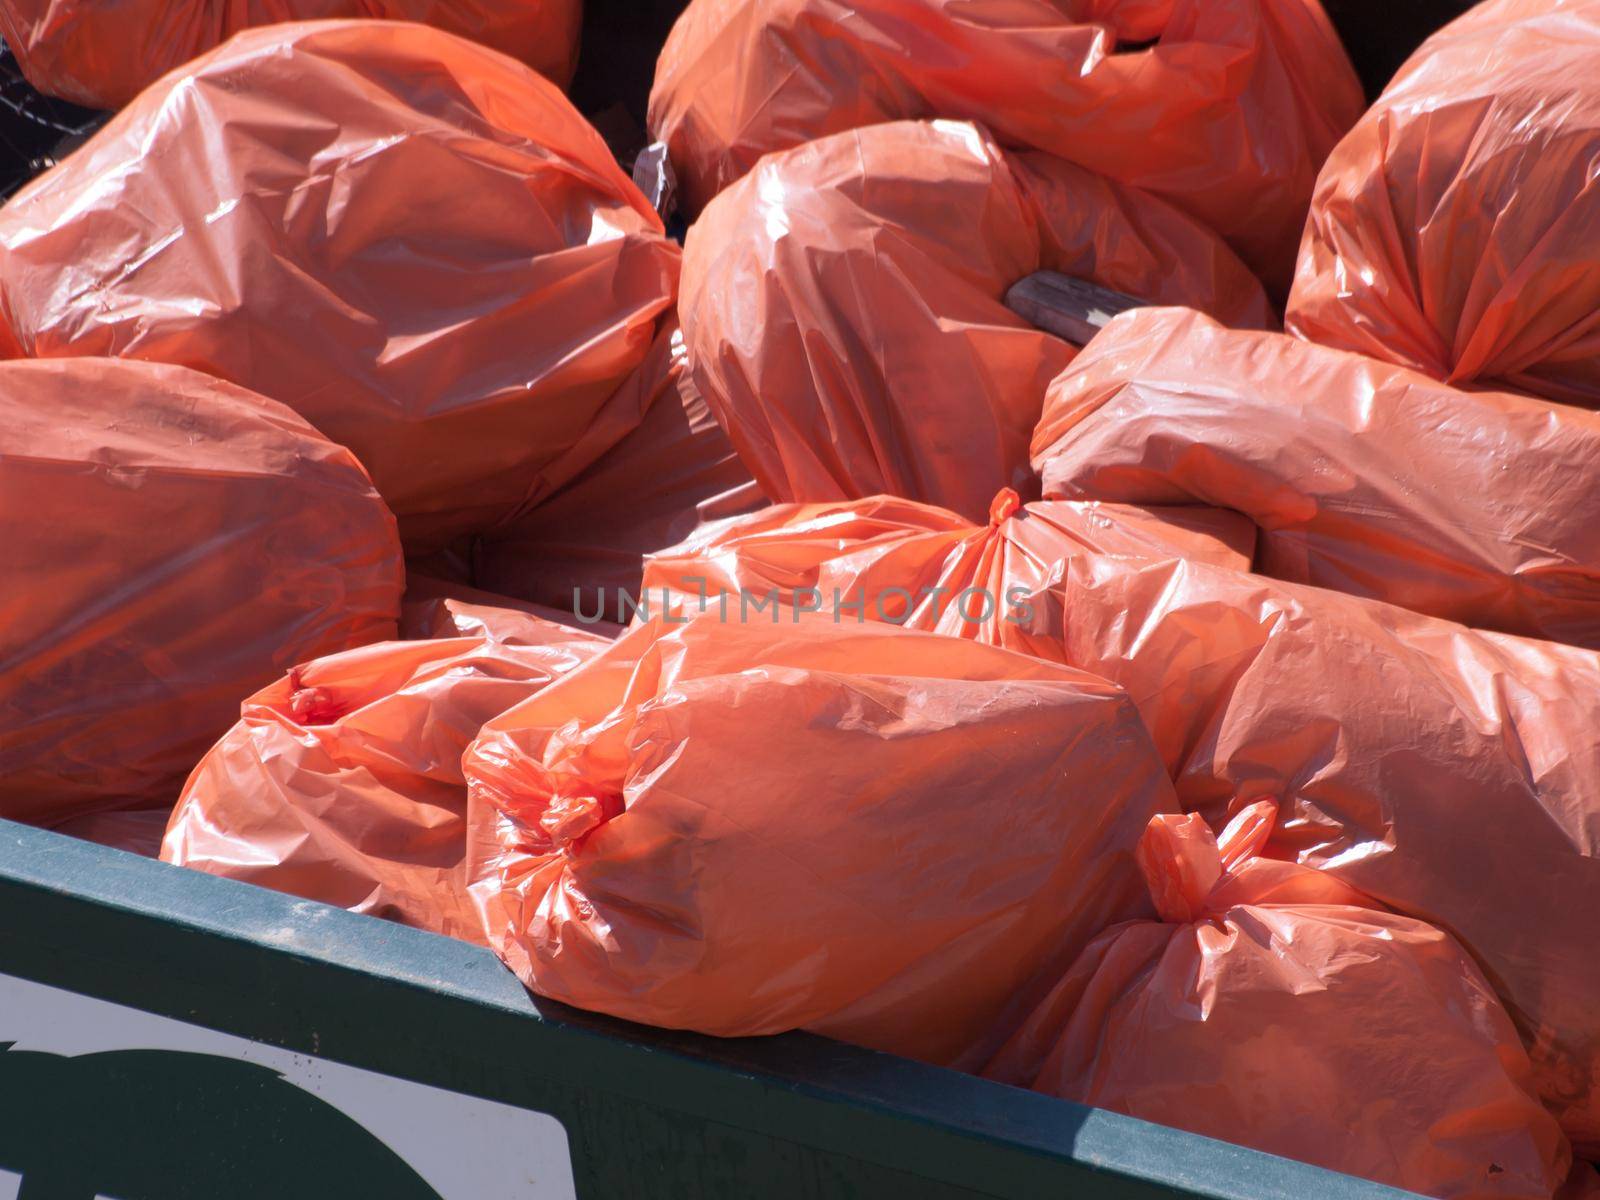 Pile of orange garbage bags.